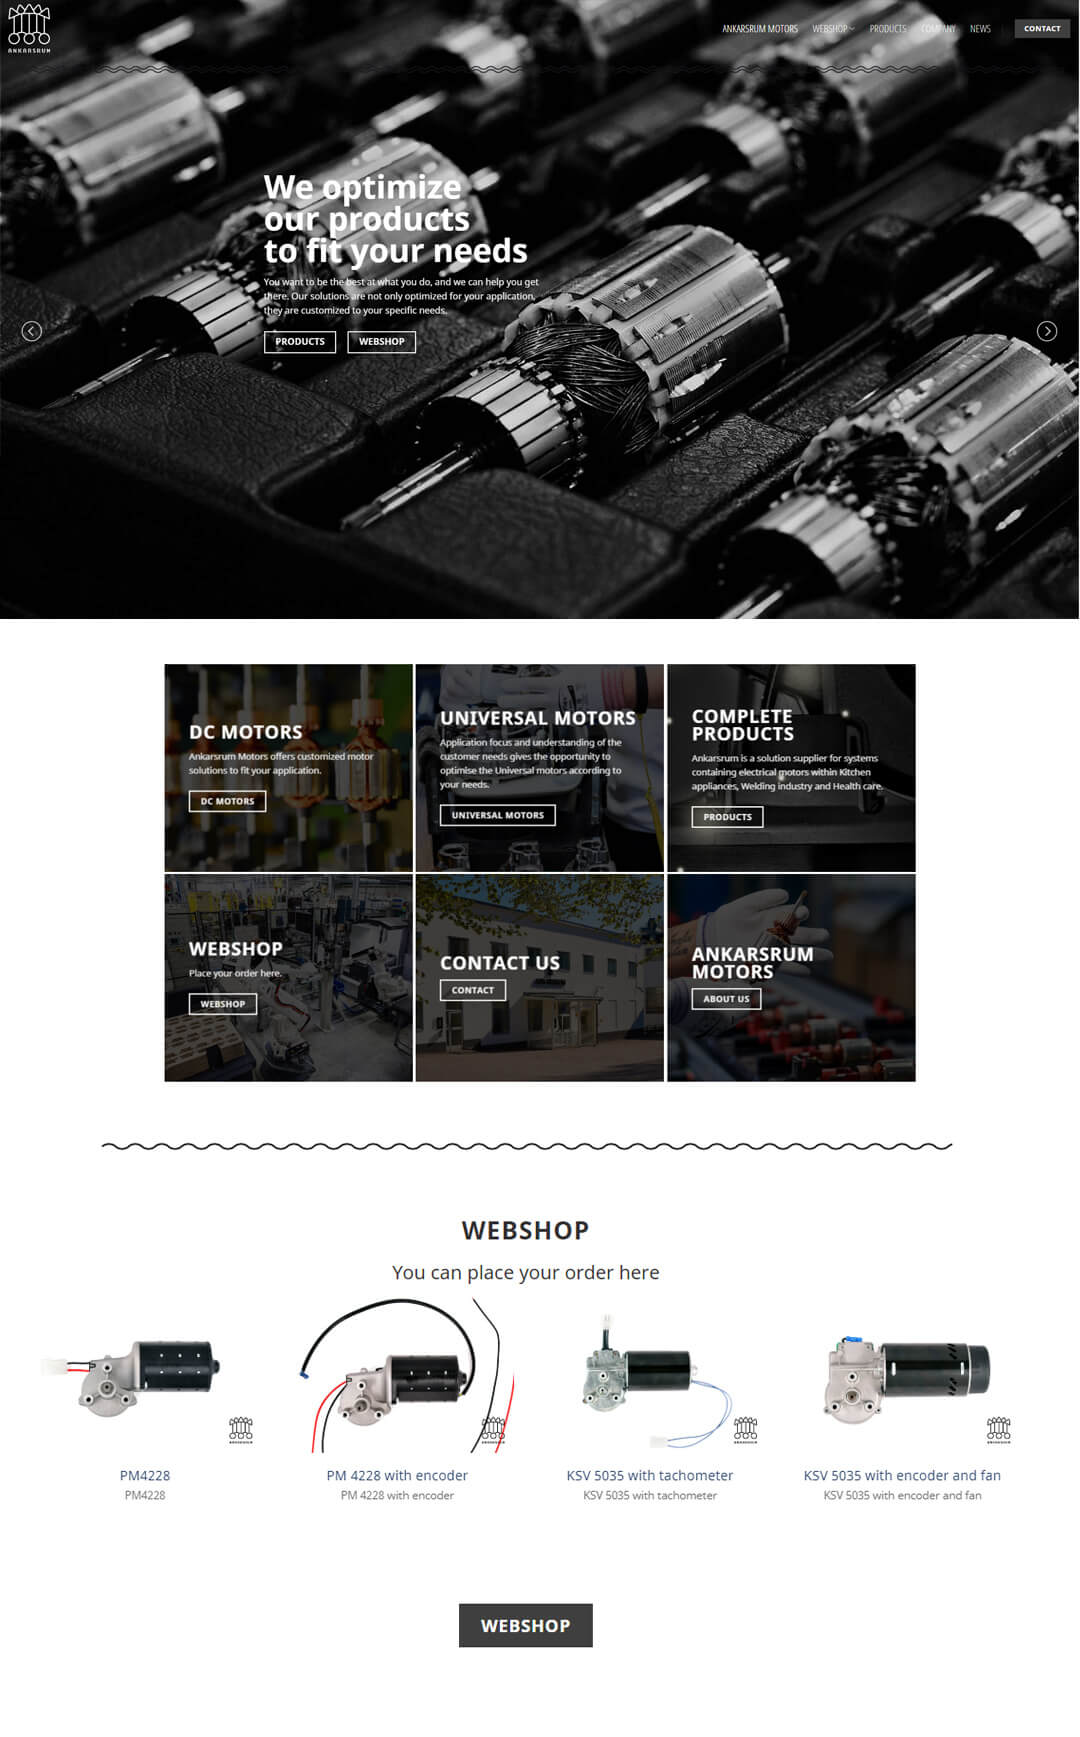 Ankarsrum Motors webbplats